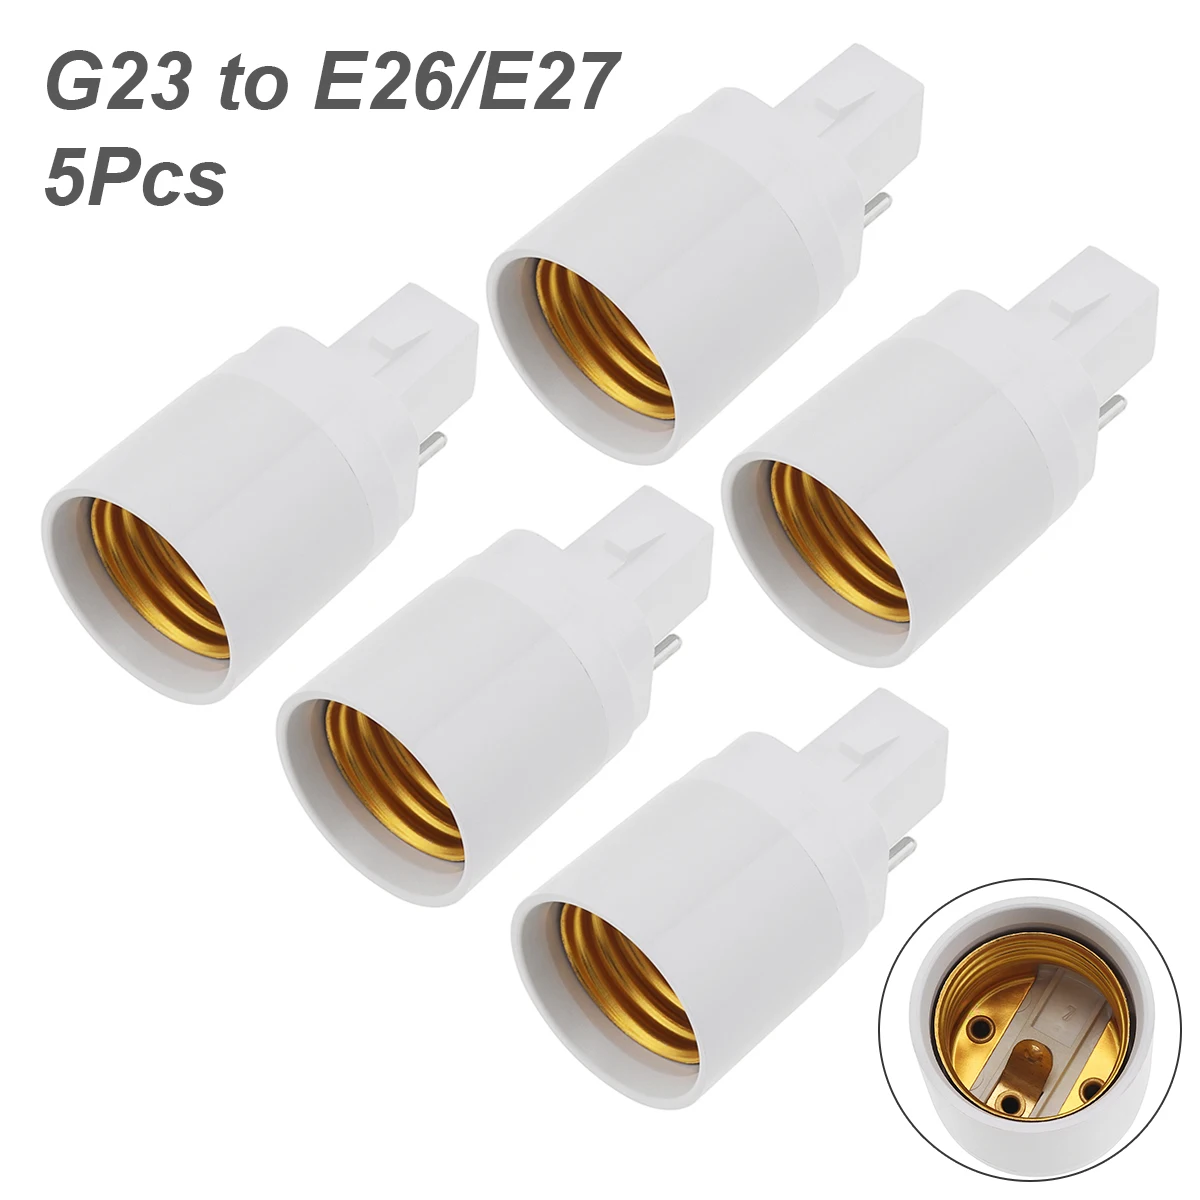 

5pcs G24 G23 GU24 GU10 B22 to E26 E27 Lamp Base E26 E17 E12 to E14 Lamp Holder Converter Socket Adapter For LED Corn Bulbs Light